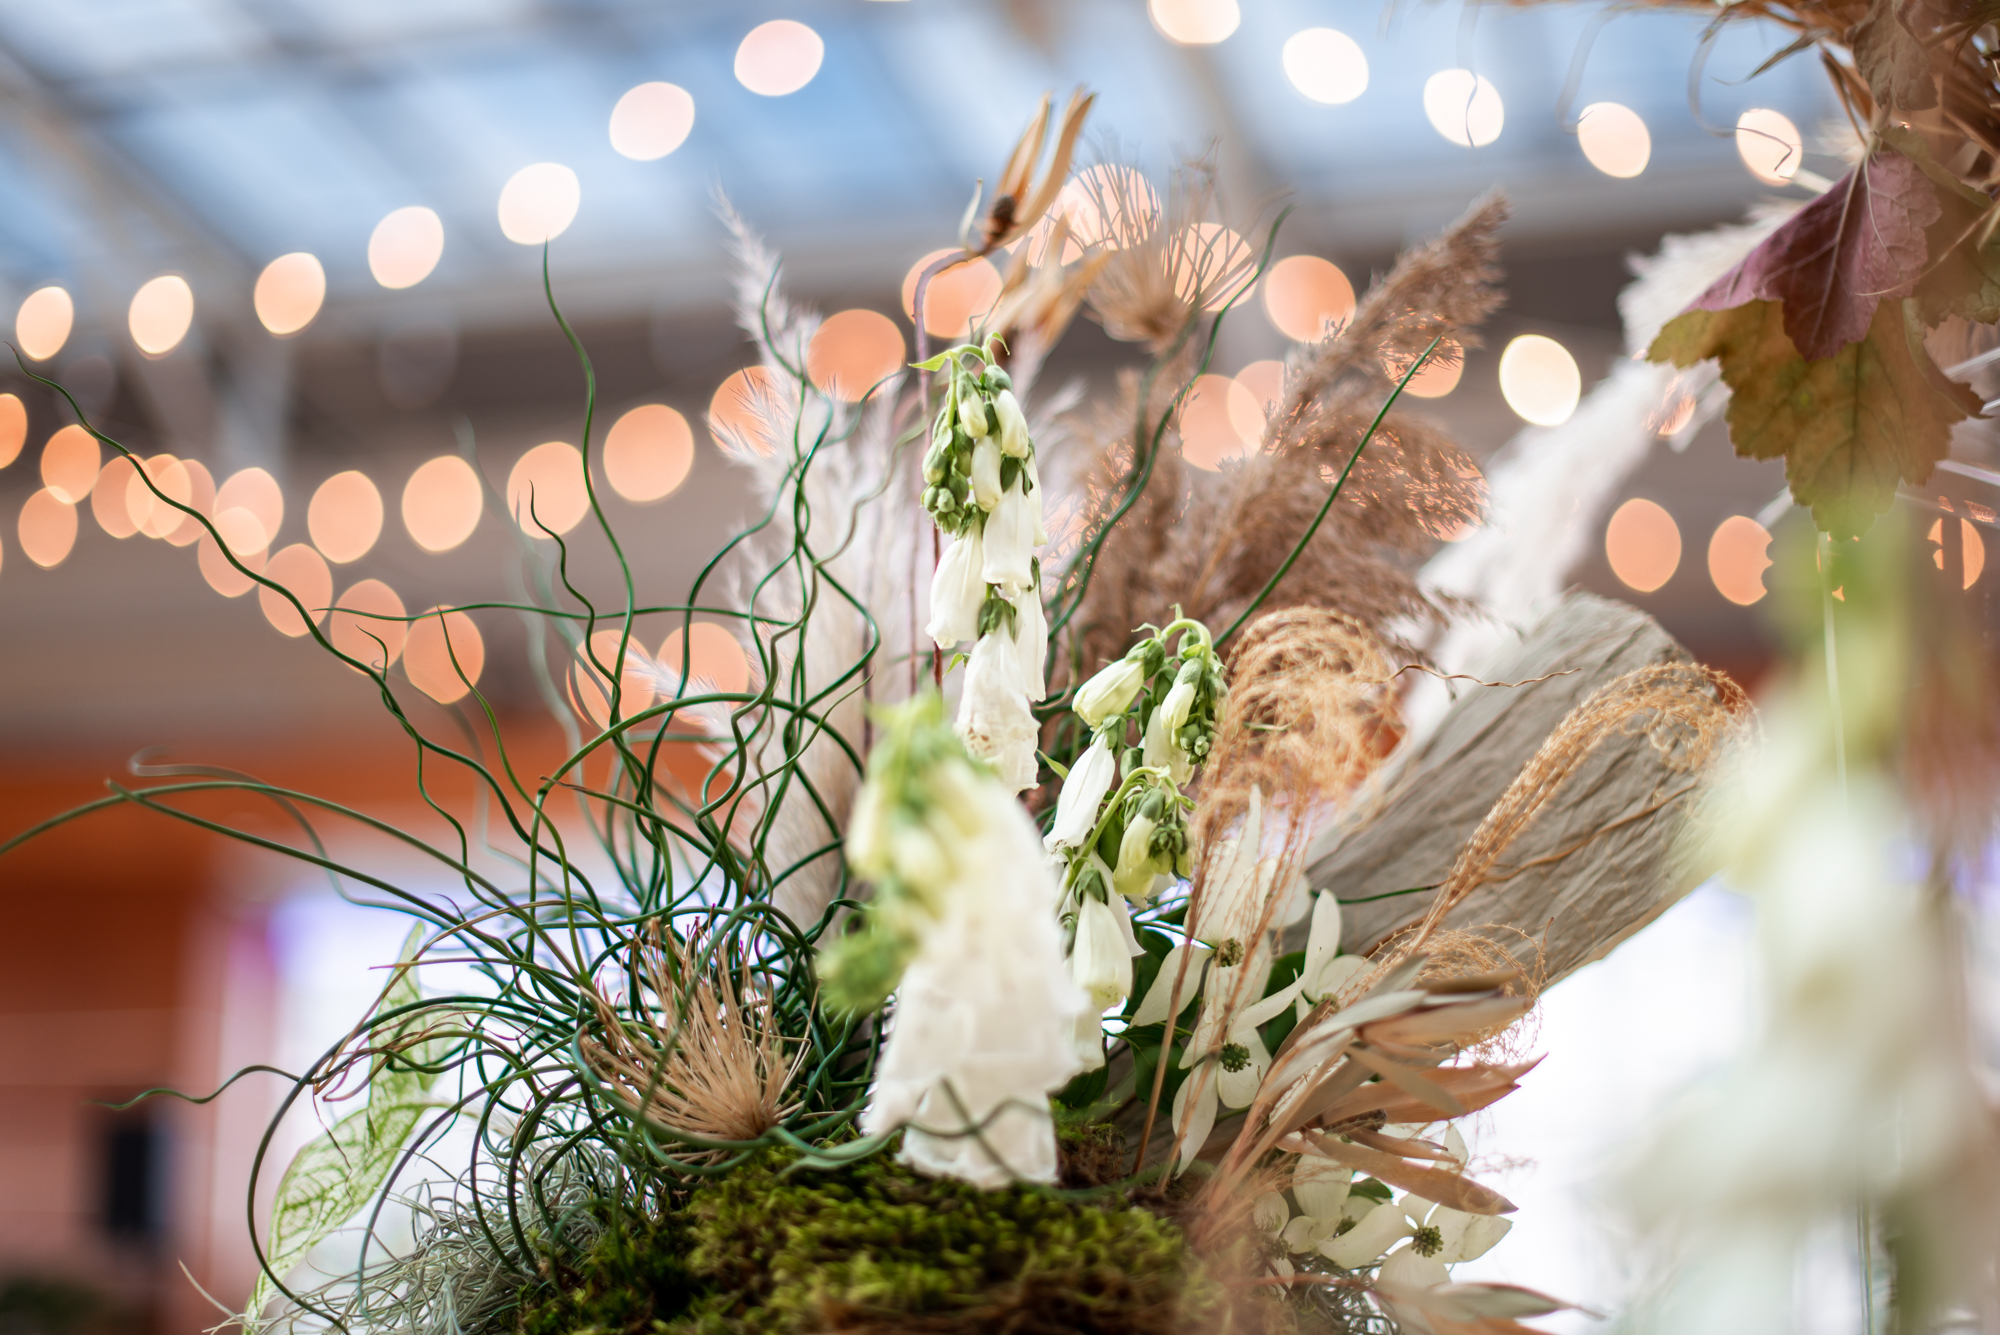 earthy florals for a modern kimmel center wedding